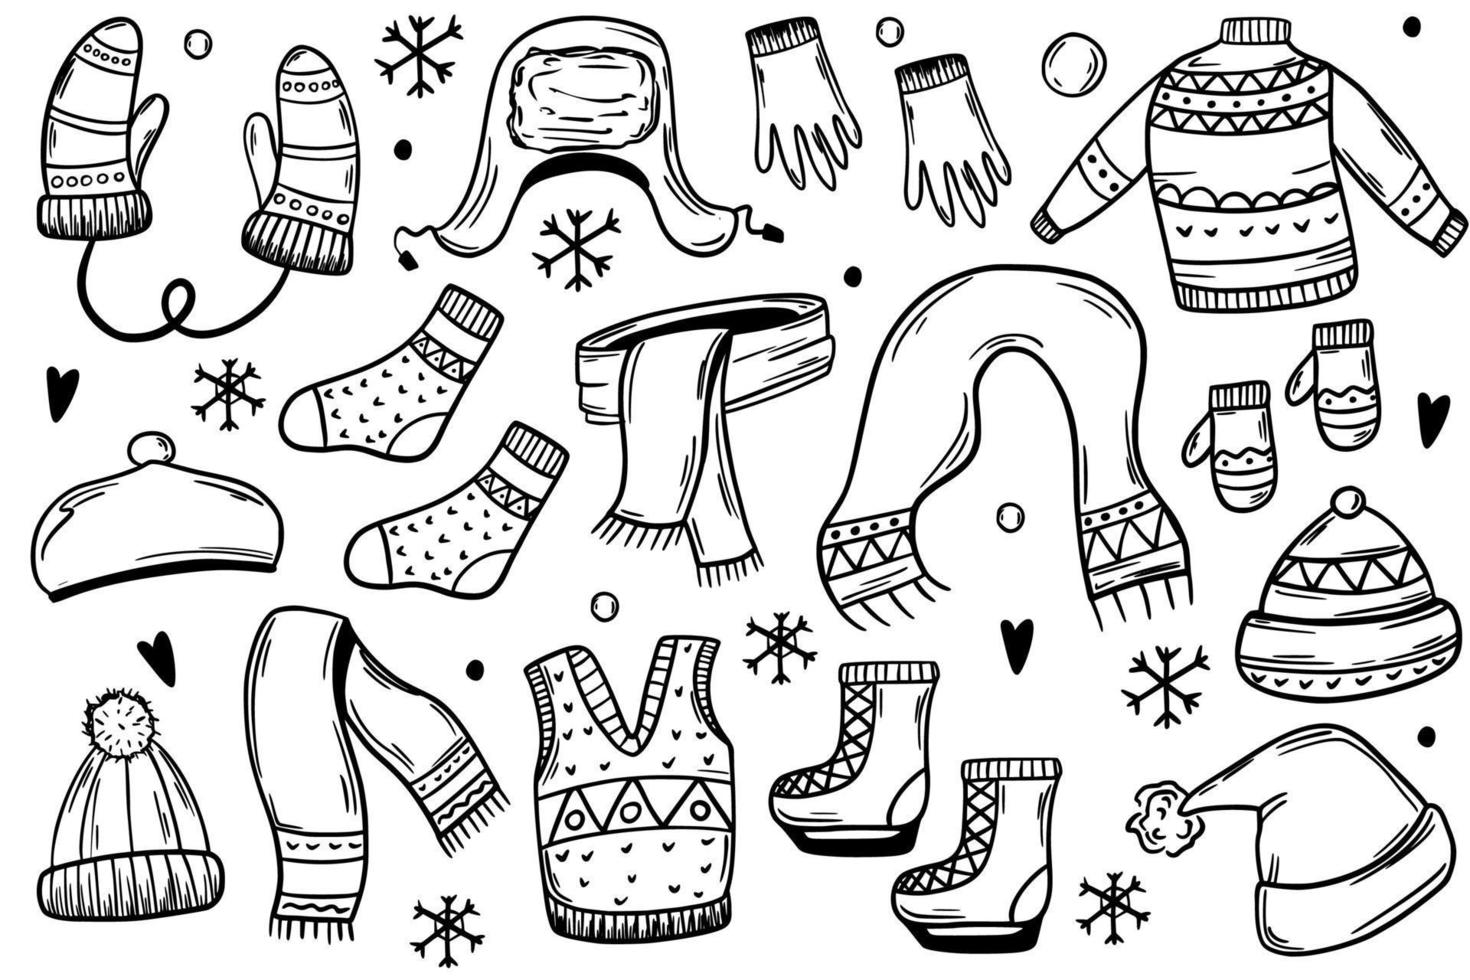 impostato di inverno Abiti, cappelli, guanti, pattini, guanti. caldo Abiti. vettore illustrazione nel schizzo stile.